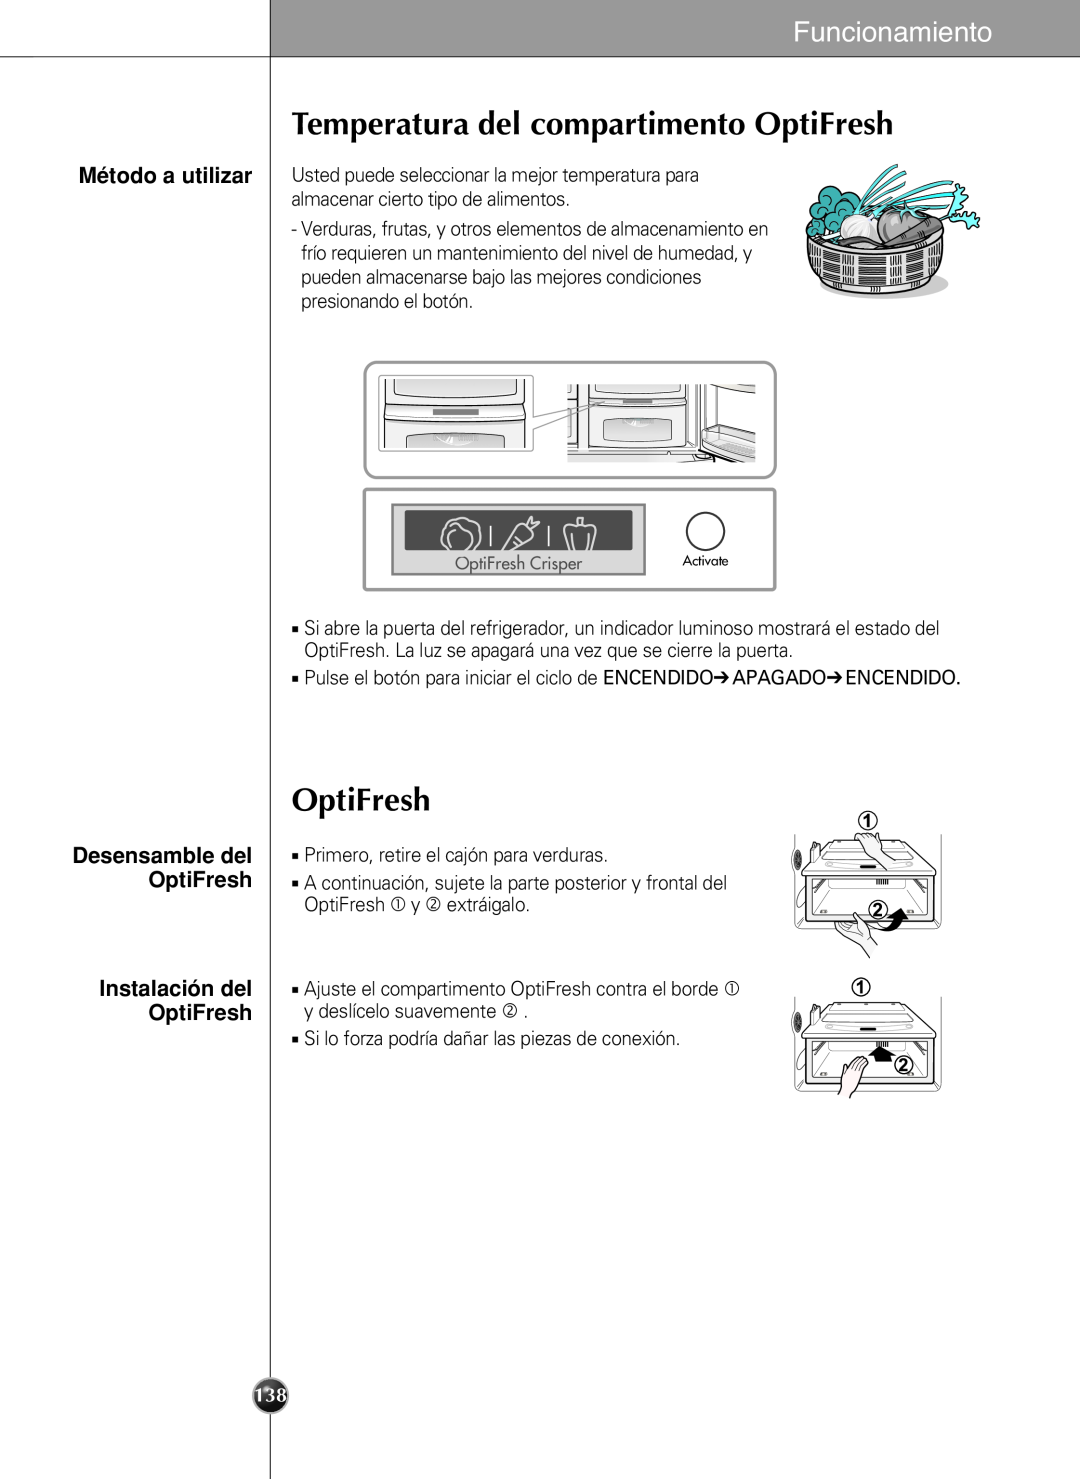 LG Electronics LSC27990TT manual Temperatura del compartimento OptiFresh, Instalación del OptiFresh, Funcionamiento 